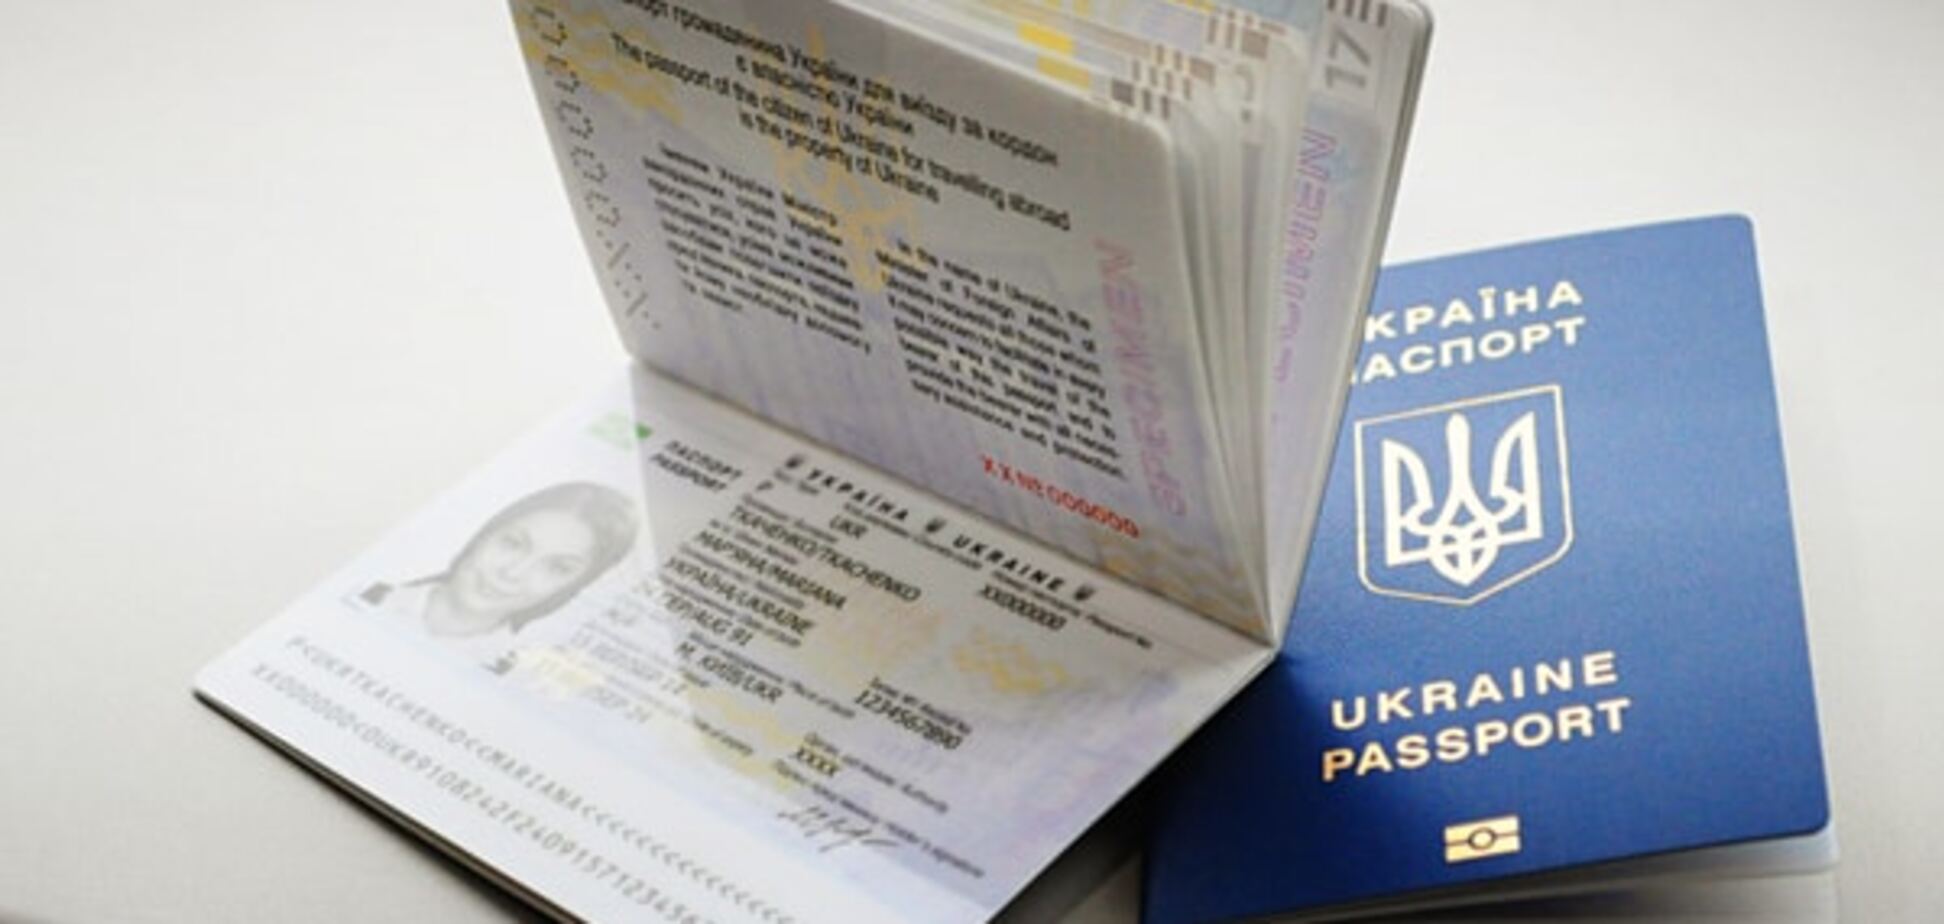 Оформление загранпаспорта в Украине теперь можно отследить в онлайн-режиме